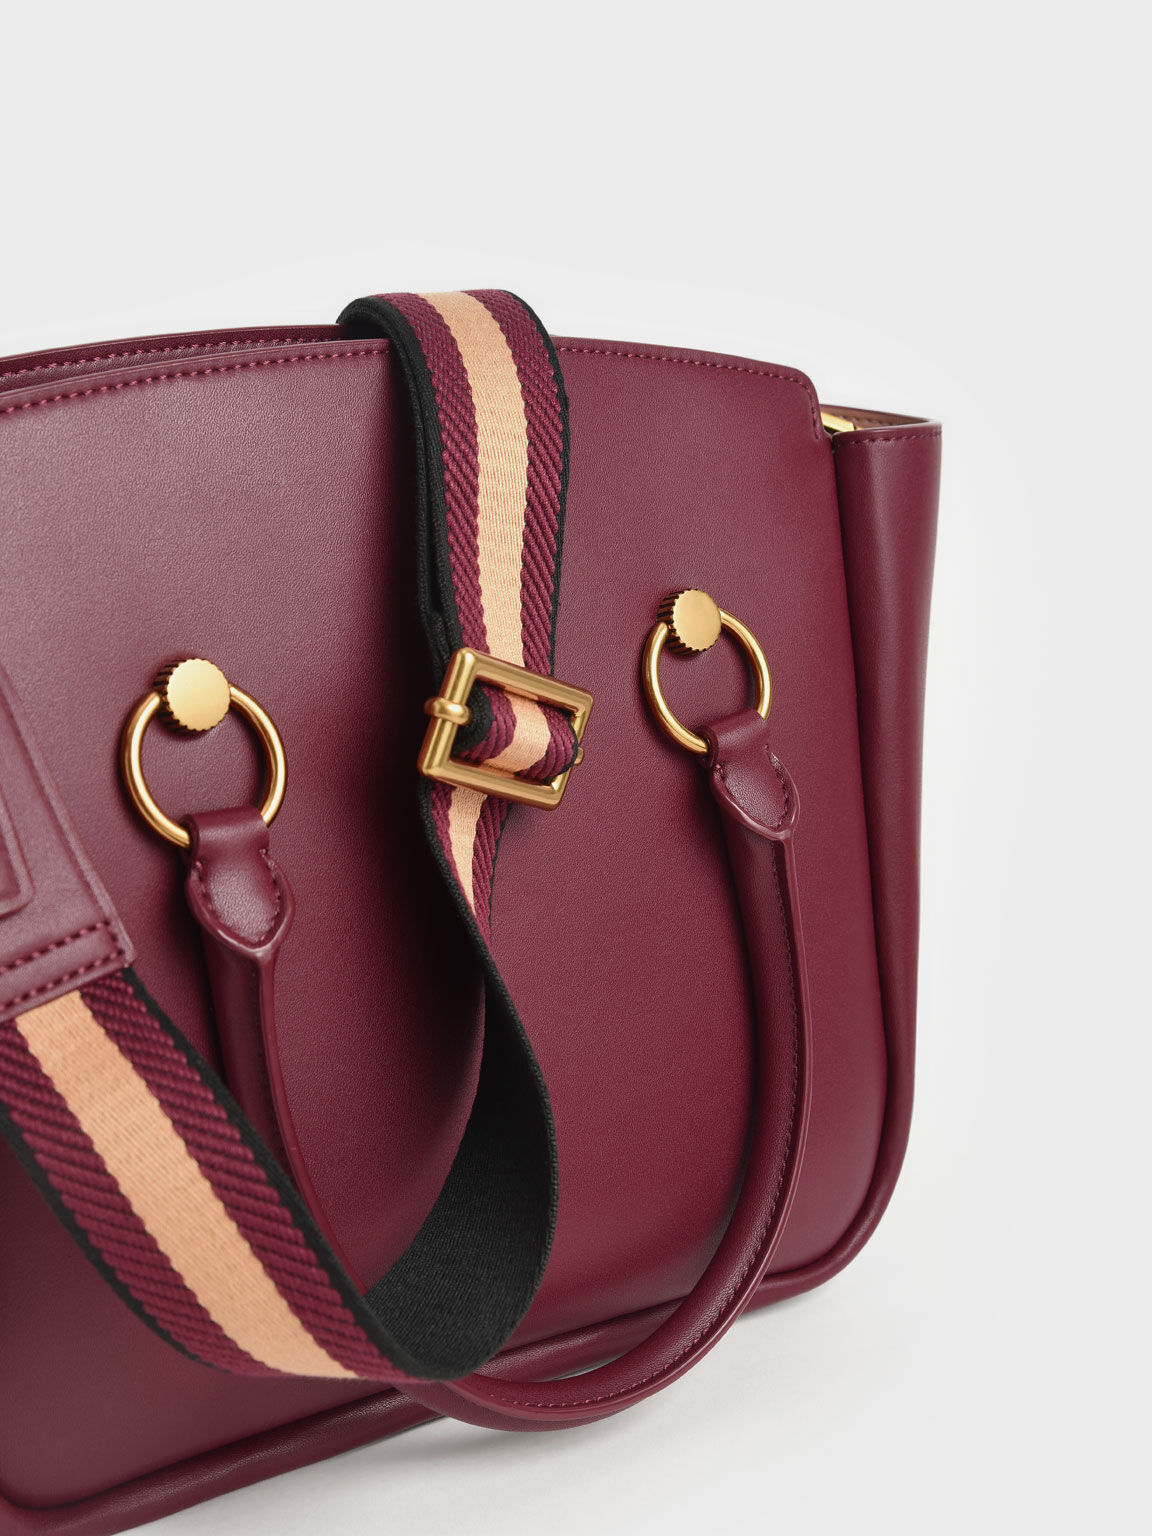 Becca Ring-Detail Large Hobo Bag, Burgundy, hi-res